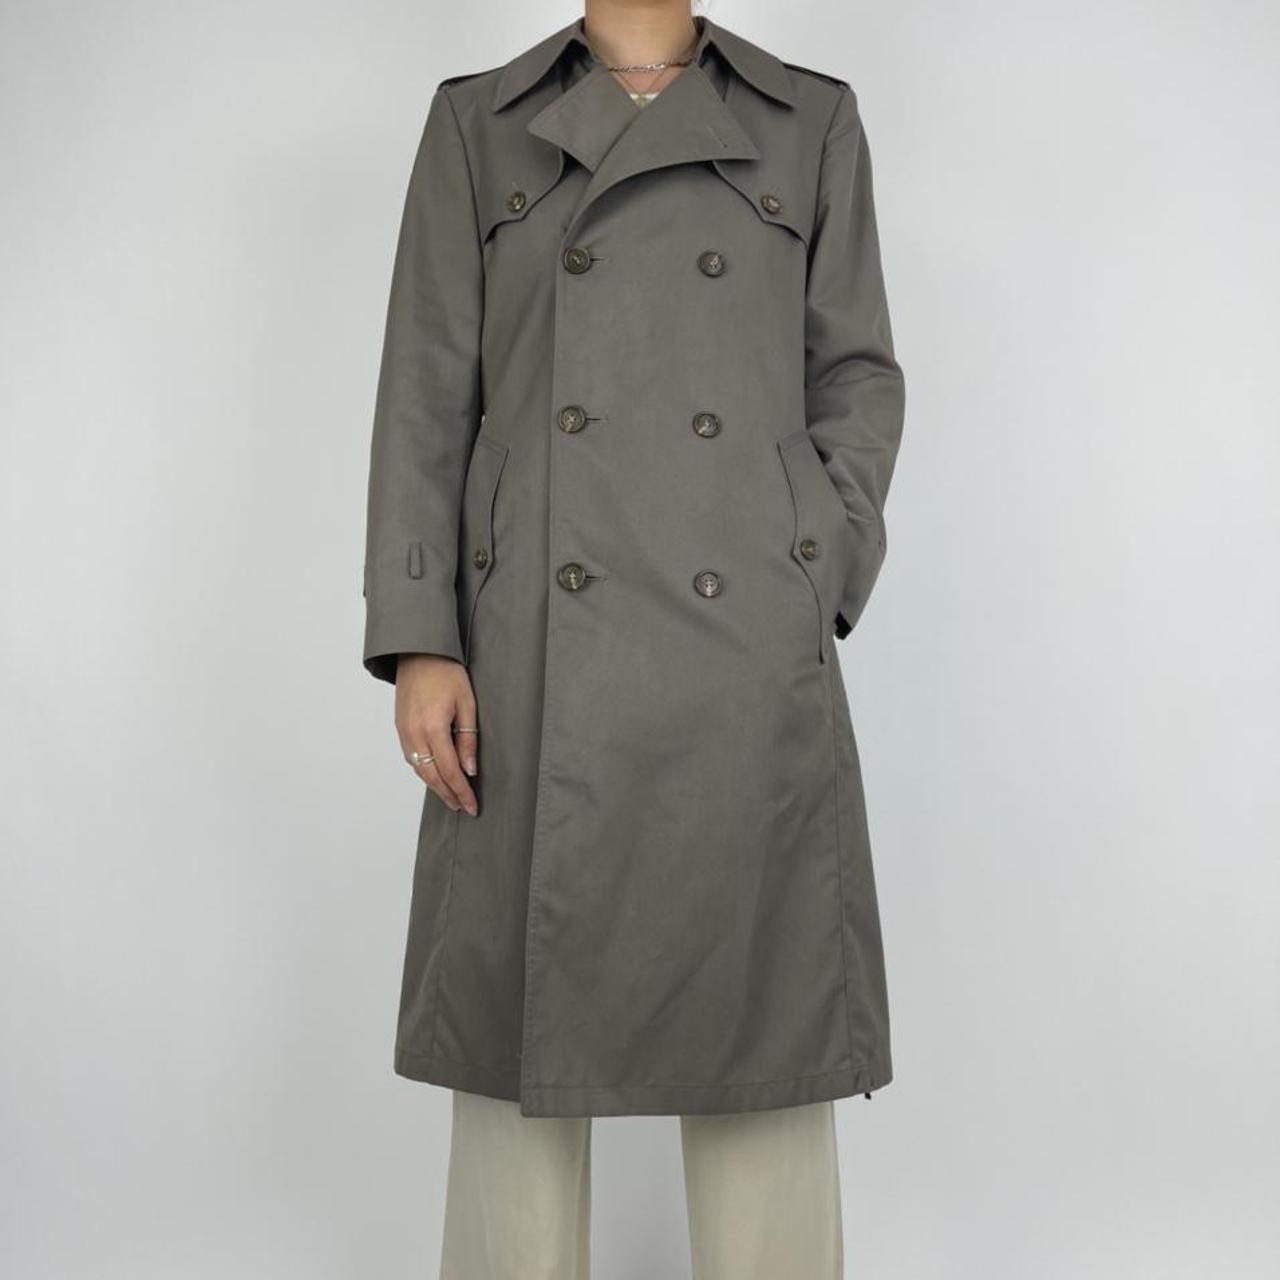 Christian Dior monsieur trench coat mac brown... - Depop